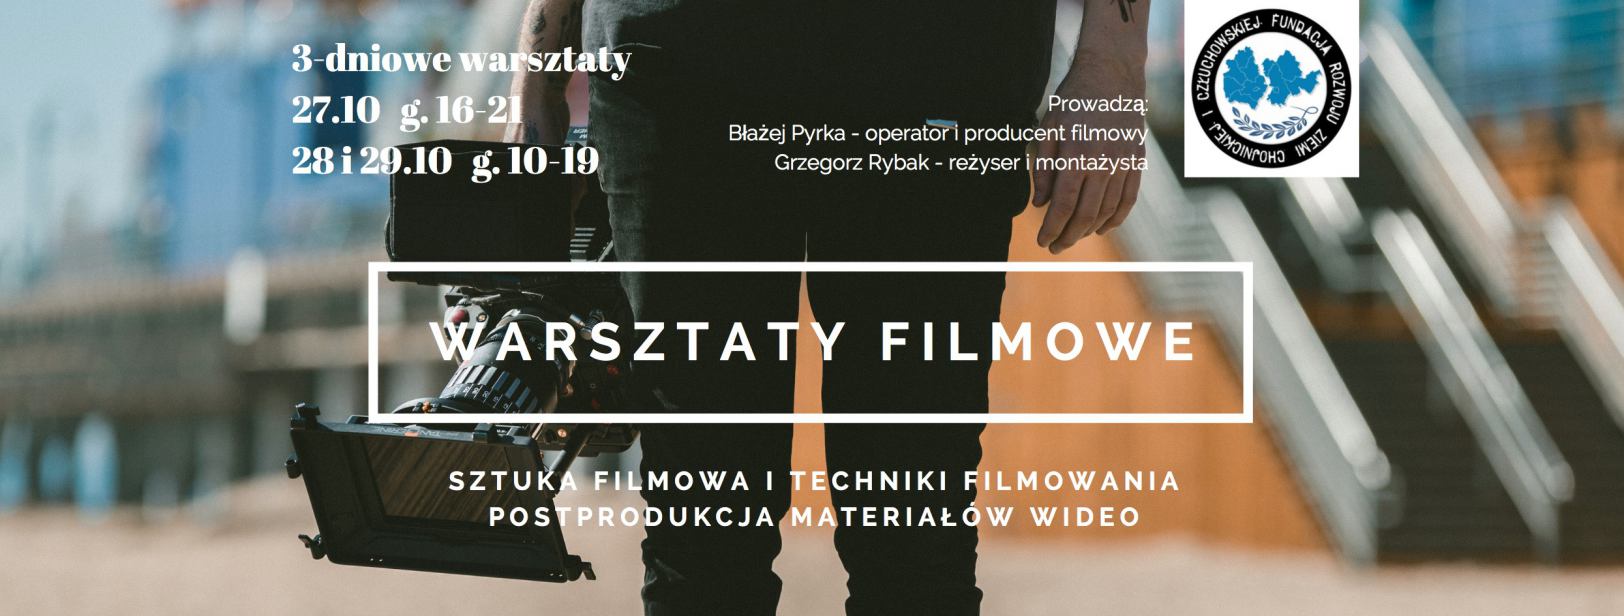 Już w tym tygodniu w Chojnicach odbędą się warsztaty filmowe